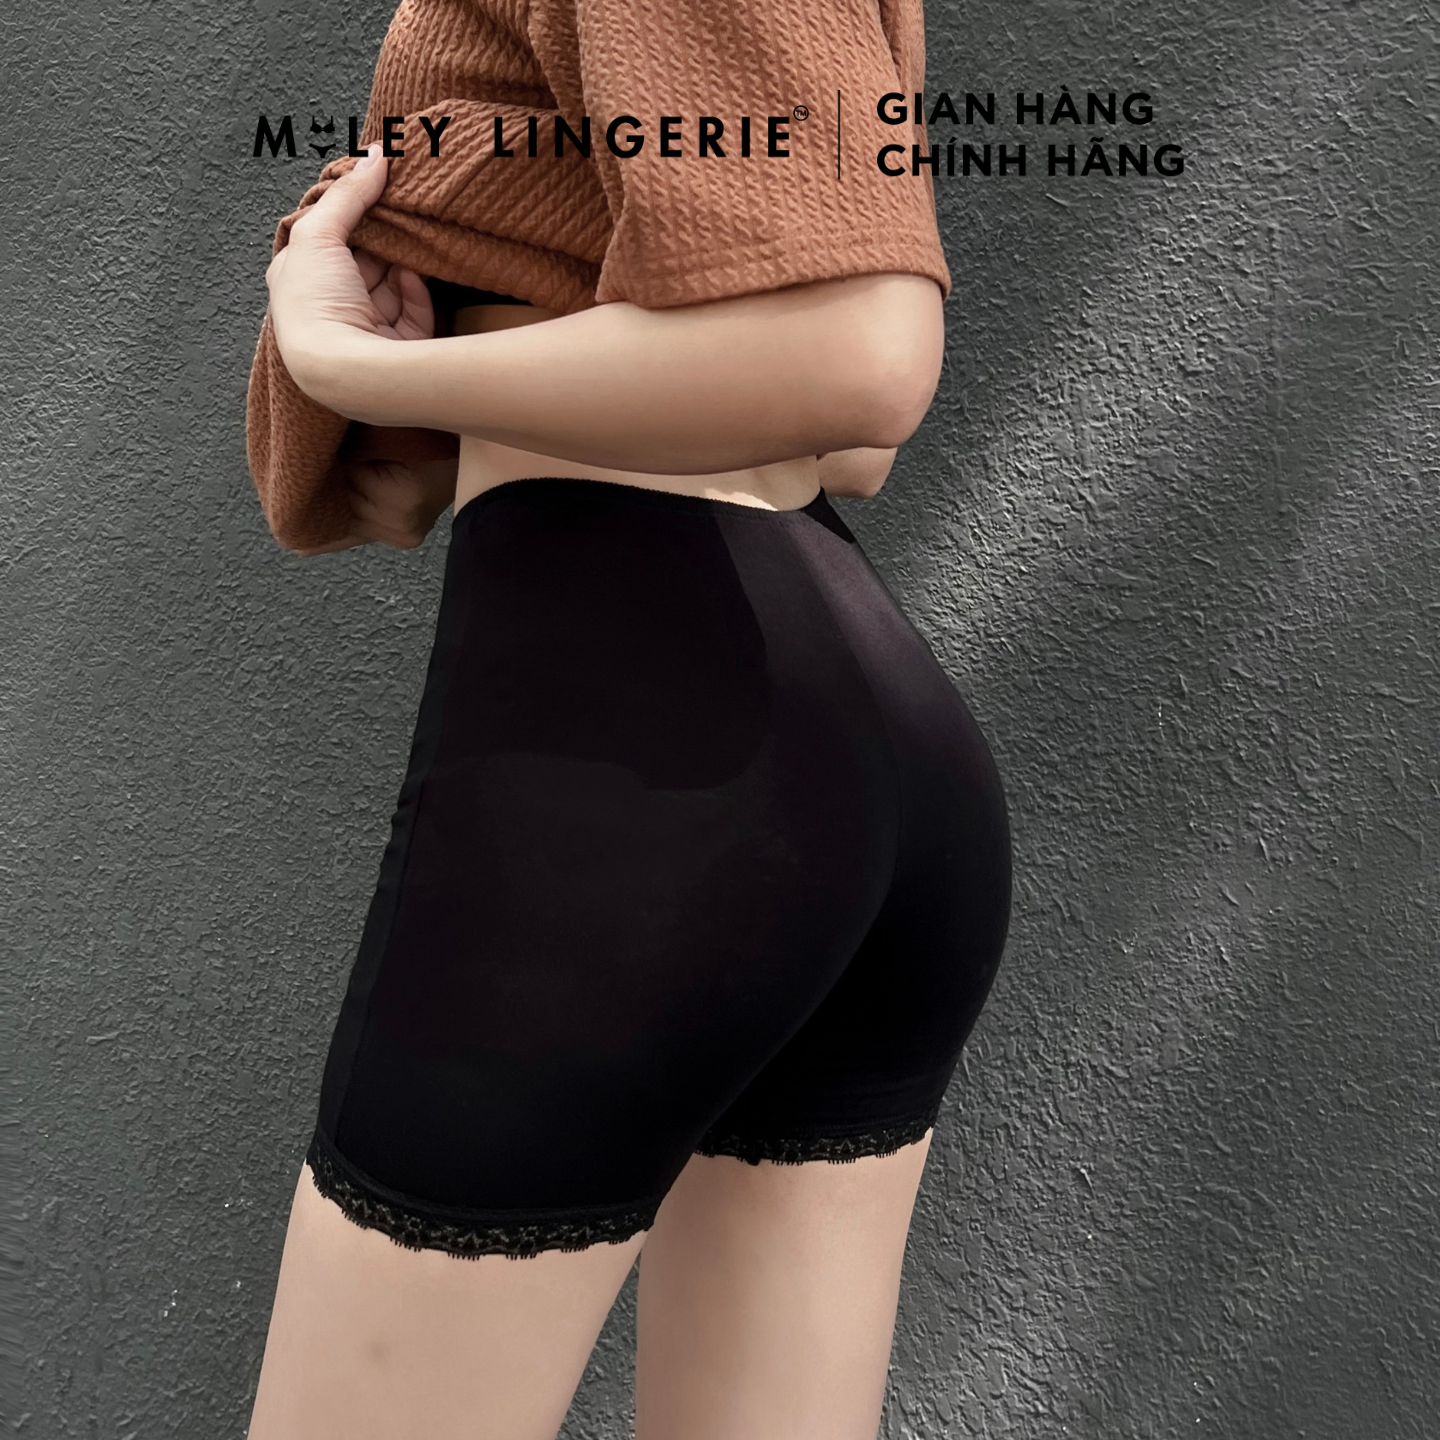 Quần Đùi Lót Nữ Mặc Trong Chân Váy Dài 25.5cm Miley Lingerie - Màu Đen FDS0106